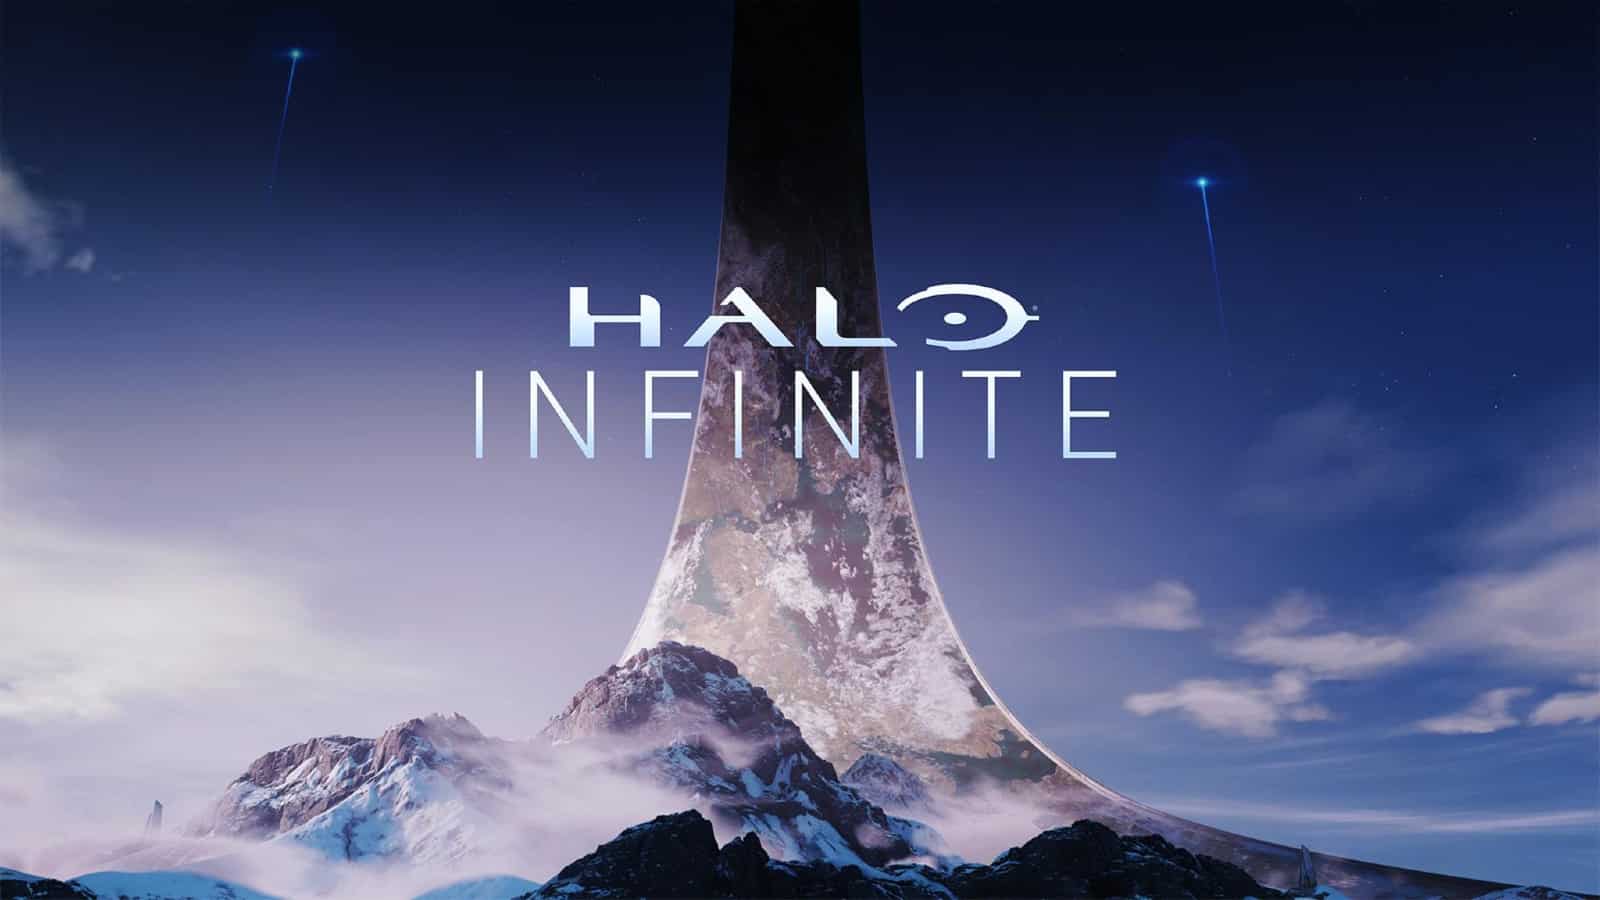 Halo infinite title